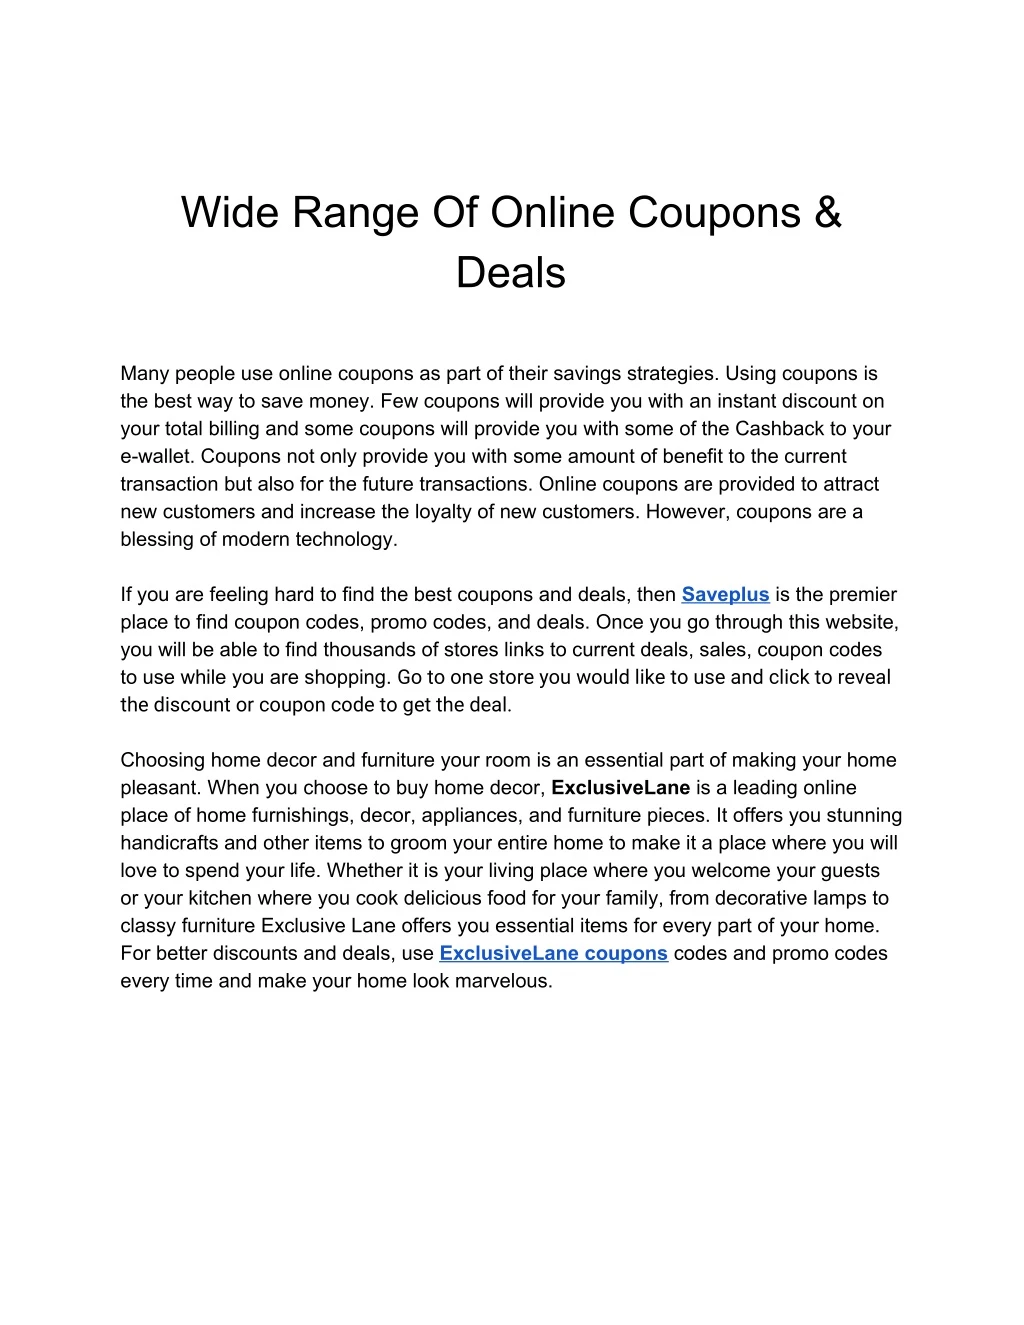 wide range of online coupons deals